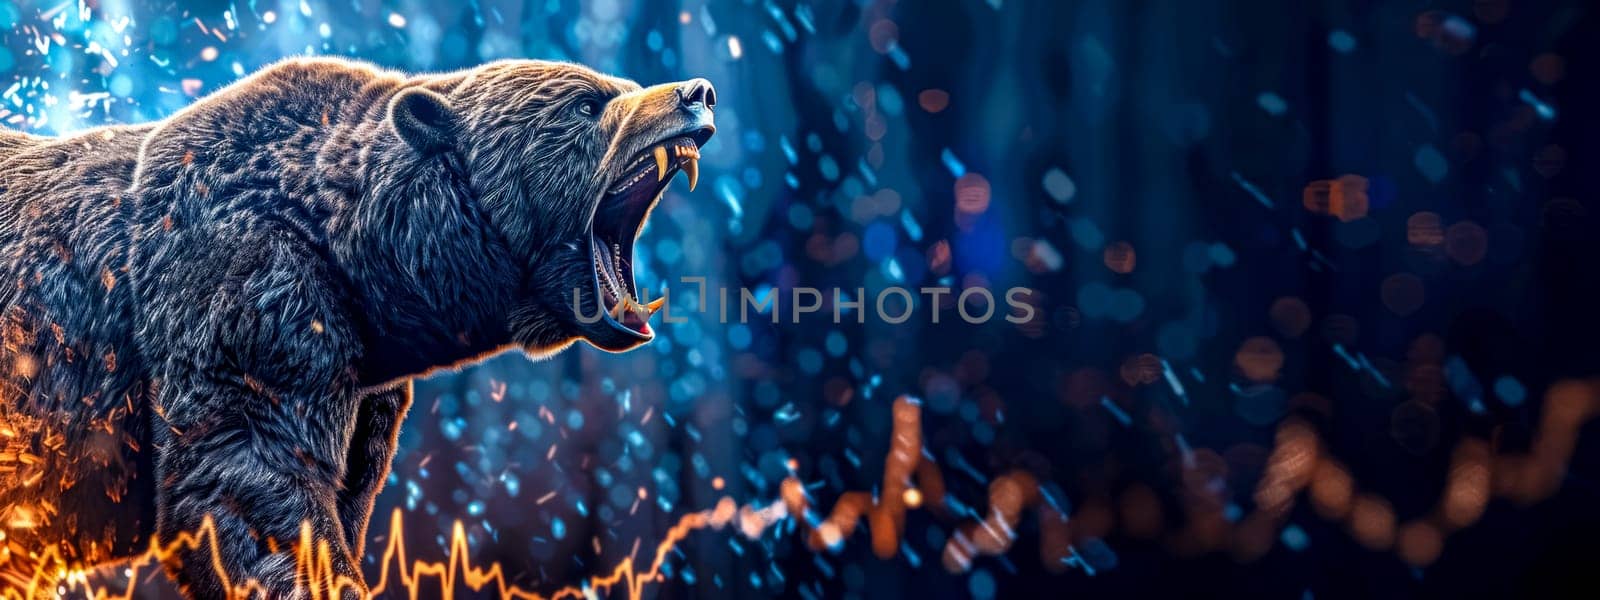 Fiery roar of a bear on a dynamic stock market background by Edophoto